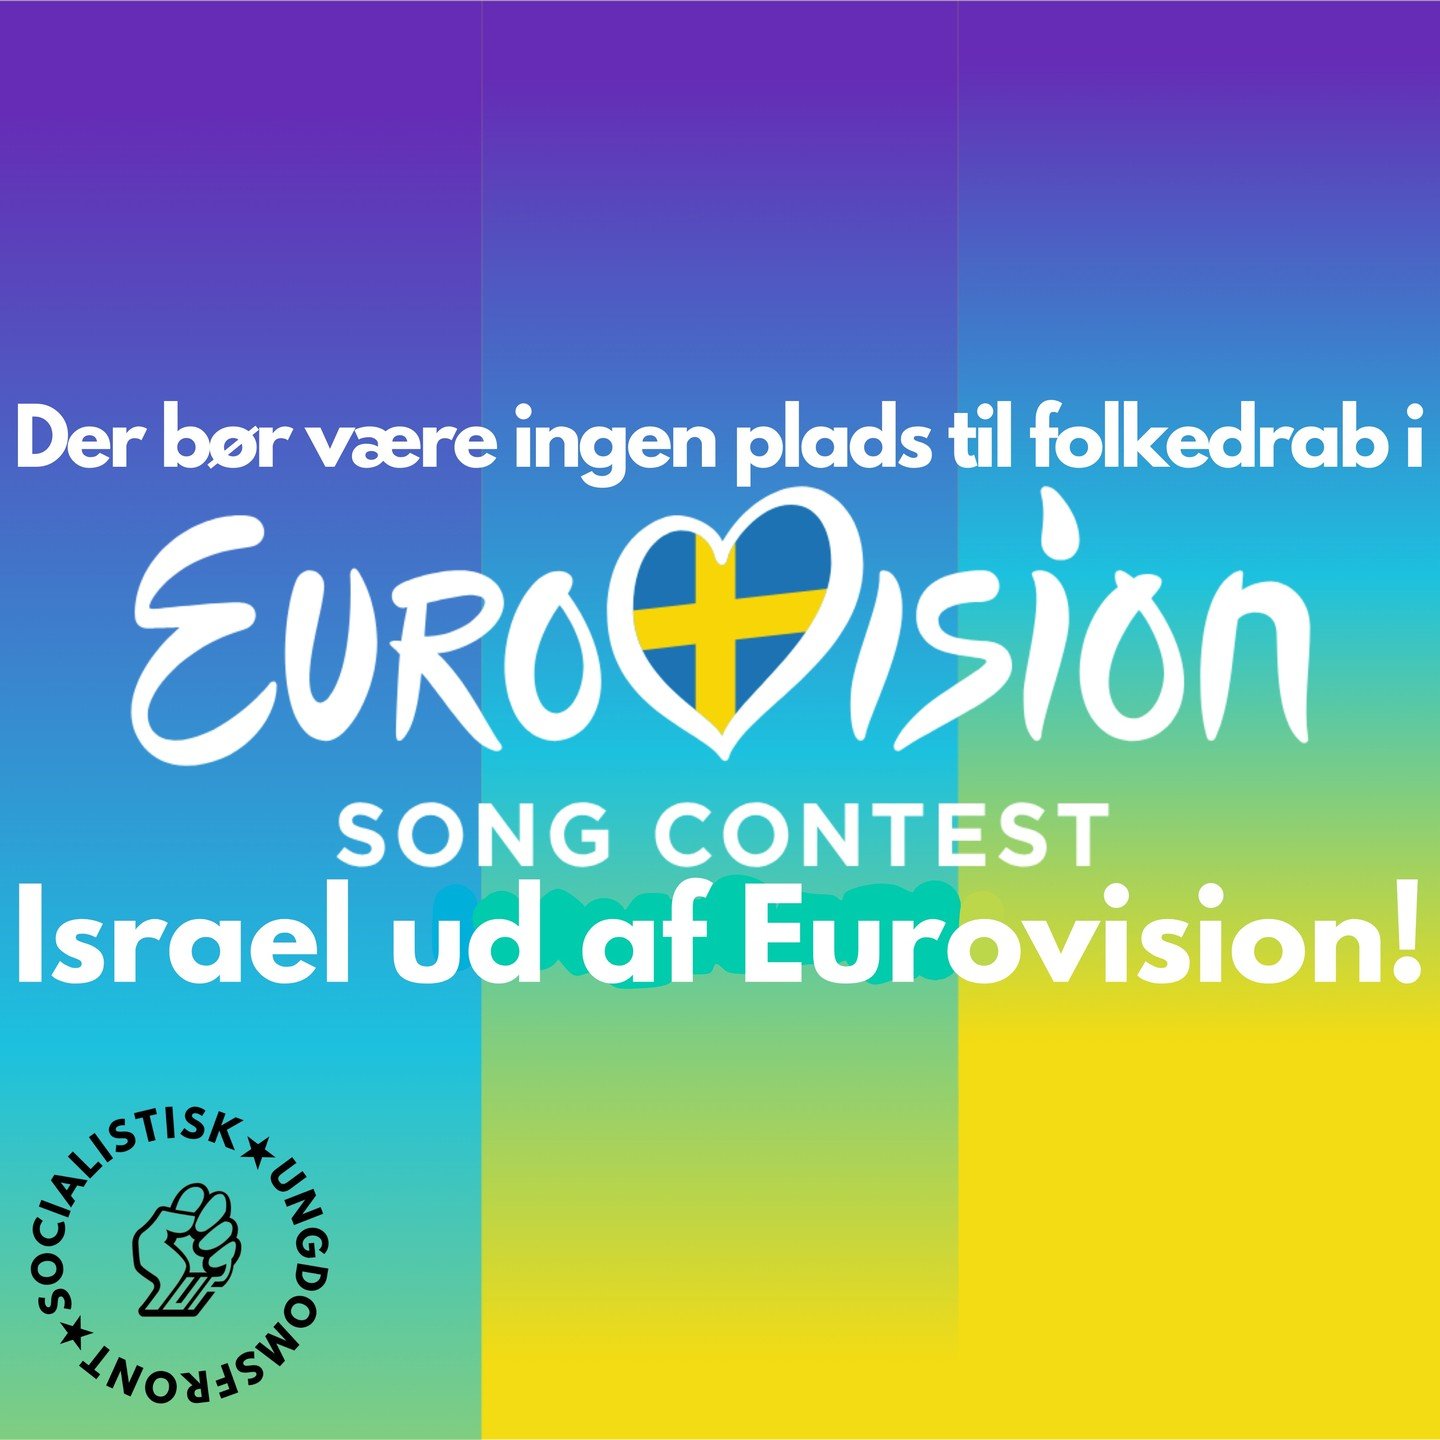 Der b&oslash;r v&aelig;re ingen plads til folkedrab i Eurovision.
Israel ud af Eurovision!
Vi har de sidste 7 m&aring;neder v&aelig;ret vidne til et folkemord beg&aring;et af Israel. Da krigen mellem Rusland og Ukraine br&oslash;d ud, blev Rusland ud